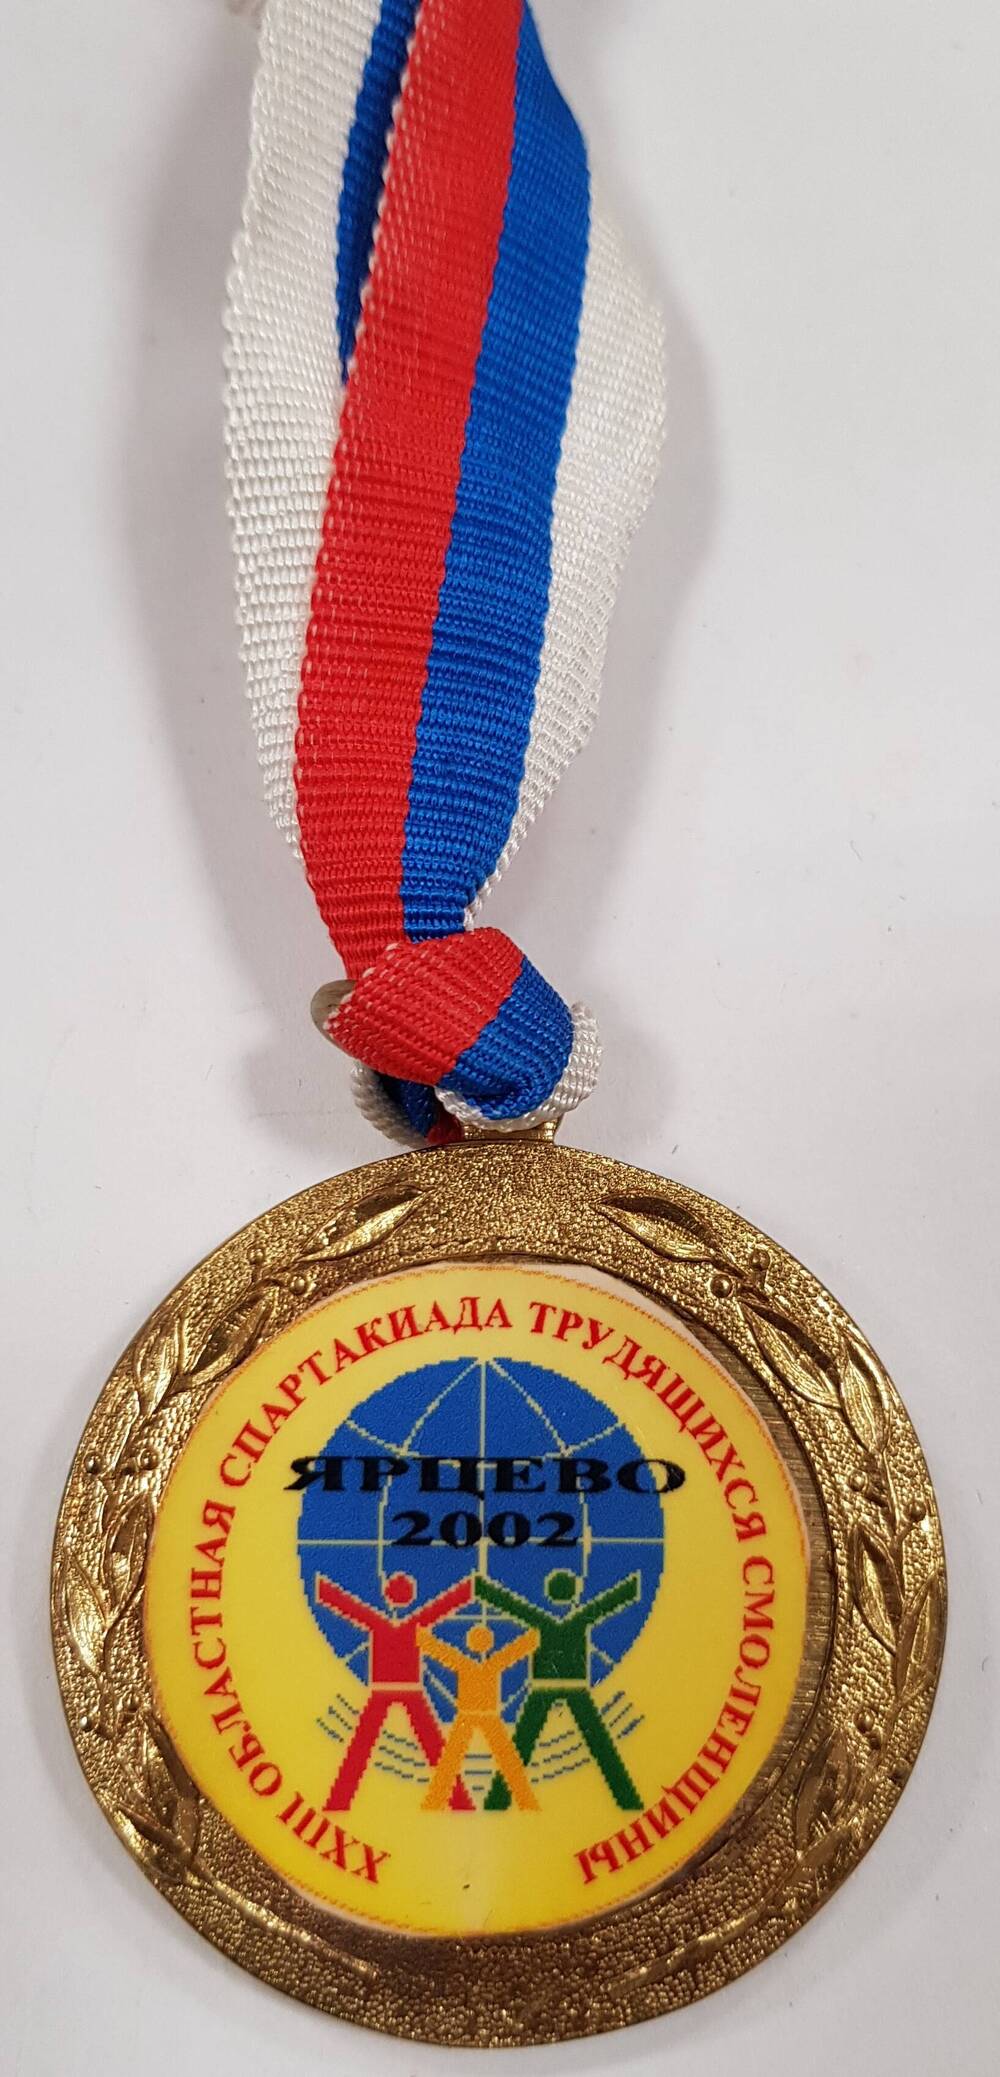 Медаль победителям соревнования XXIII областной спартакиады трудящихся Смоленщины